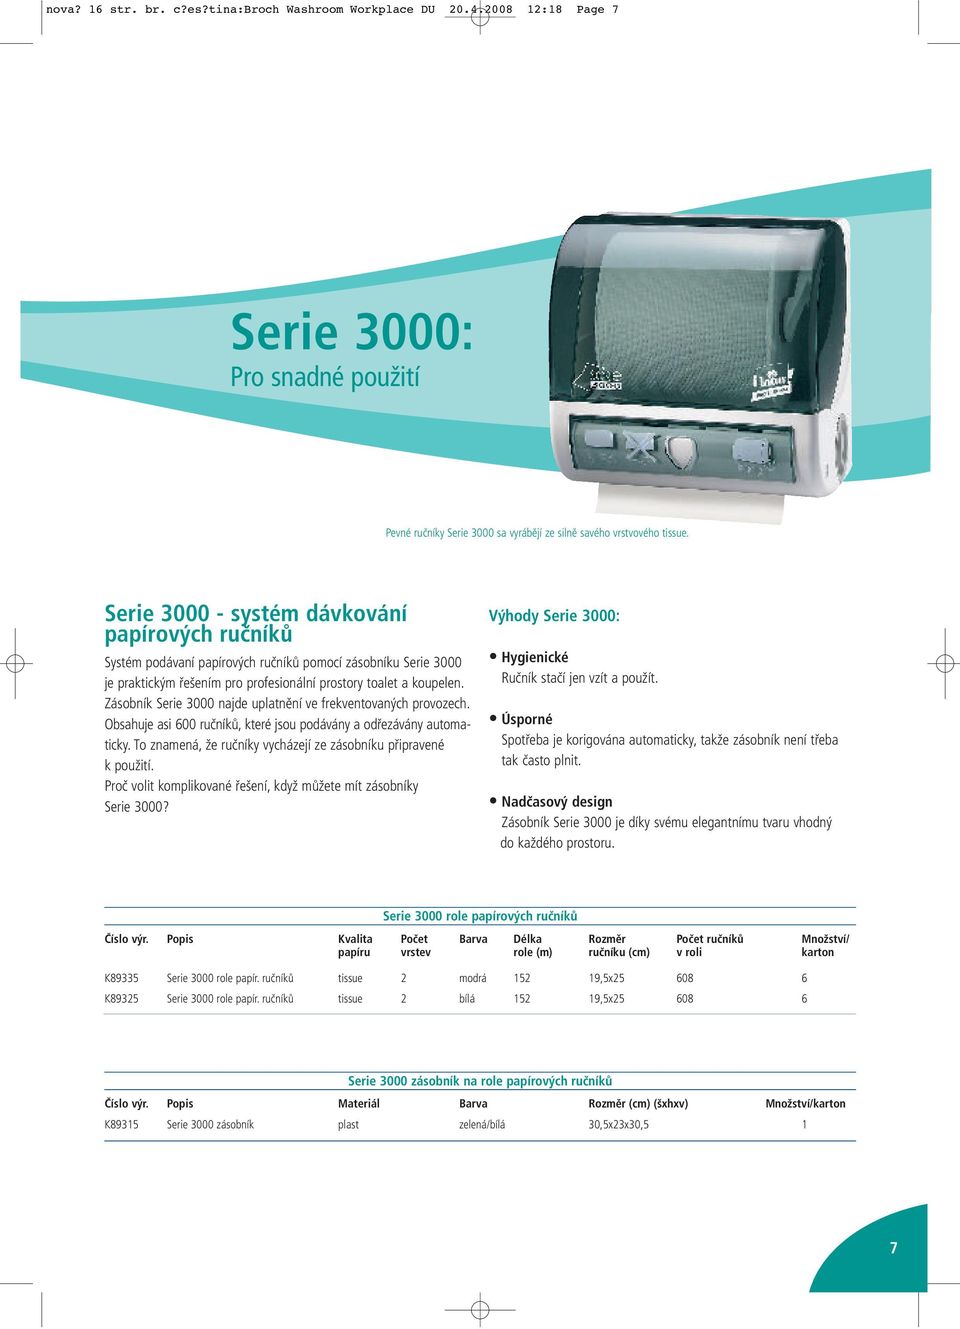 Zásobník Serie 3000 najde uplatnění ve frekventovaných provozech. Obsahuje asi 600 ručníků, které jsou podávány a odřezávány automaticky.